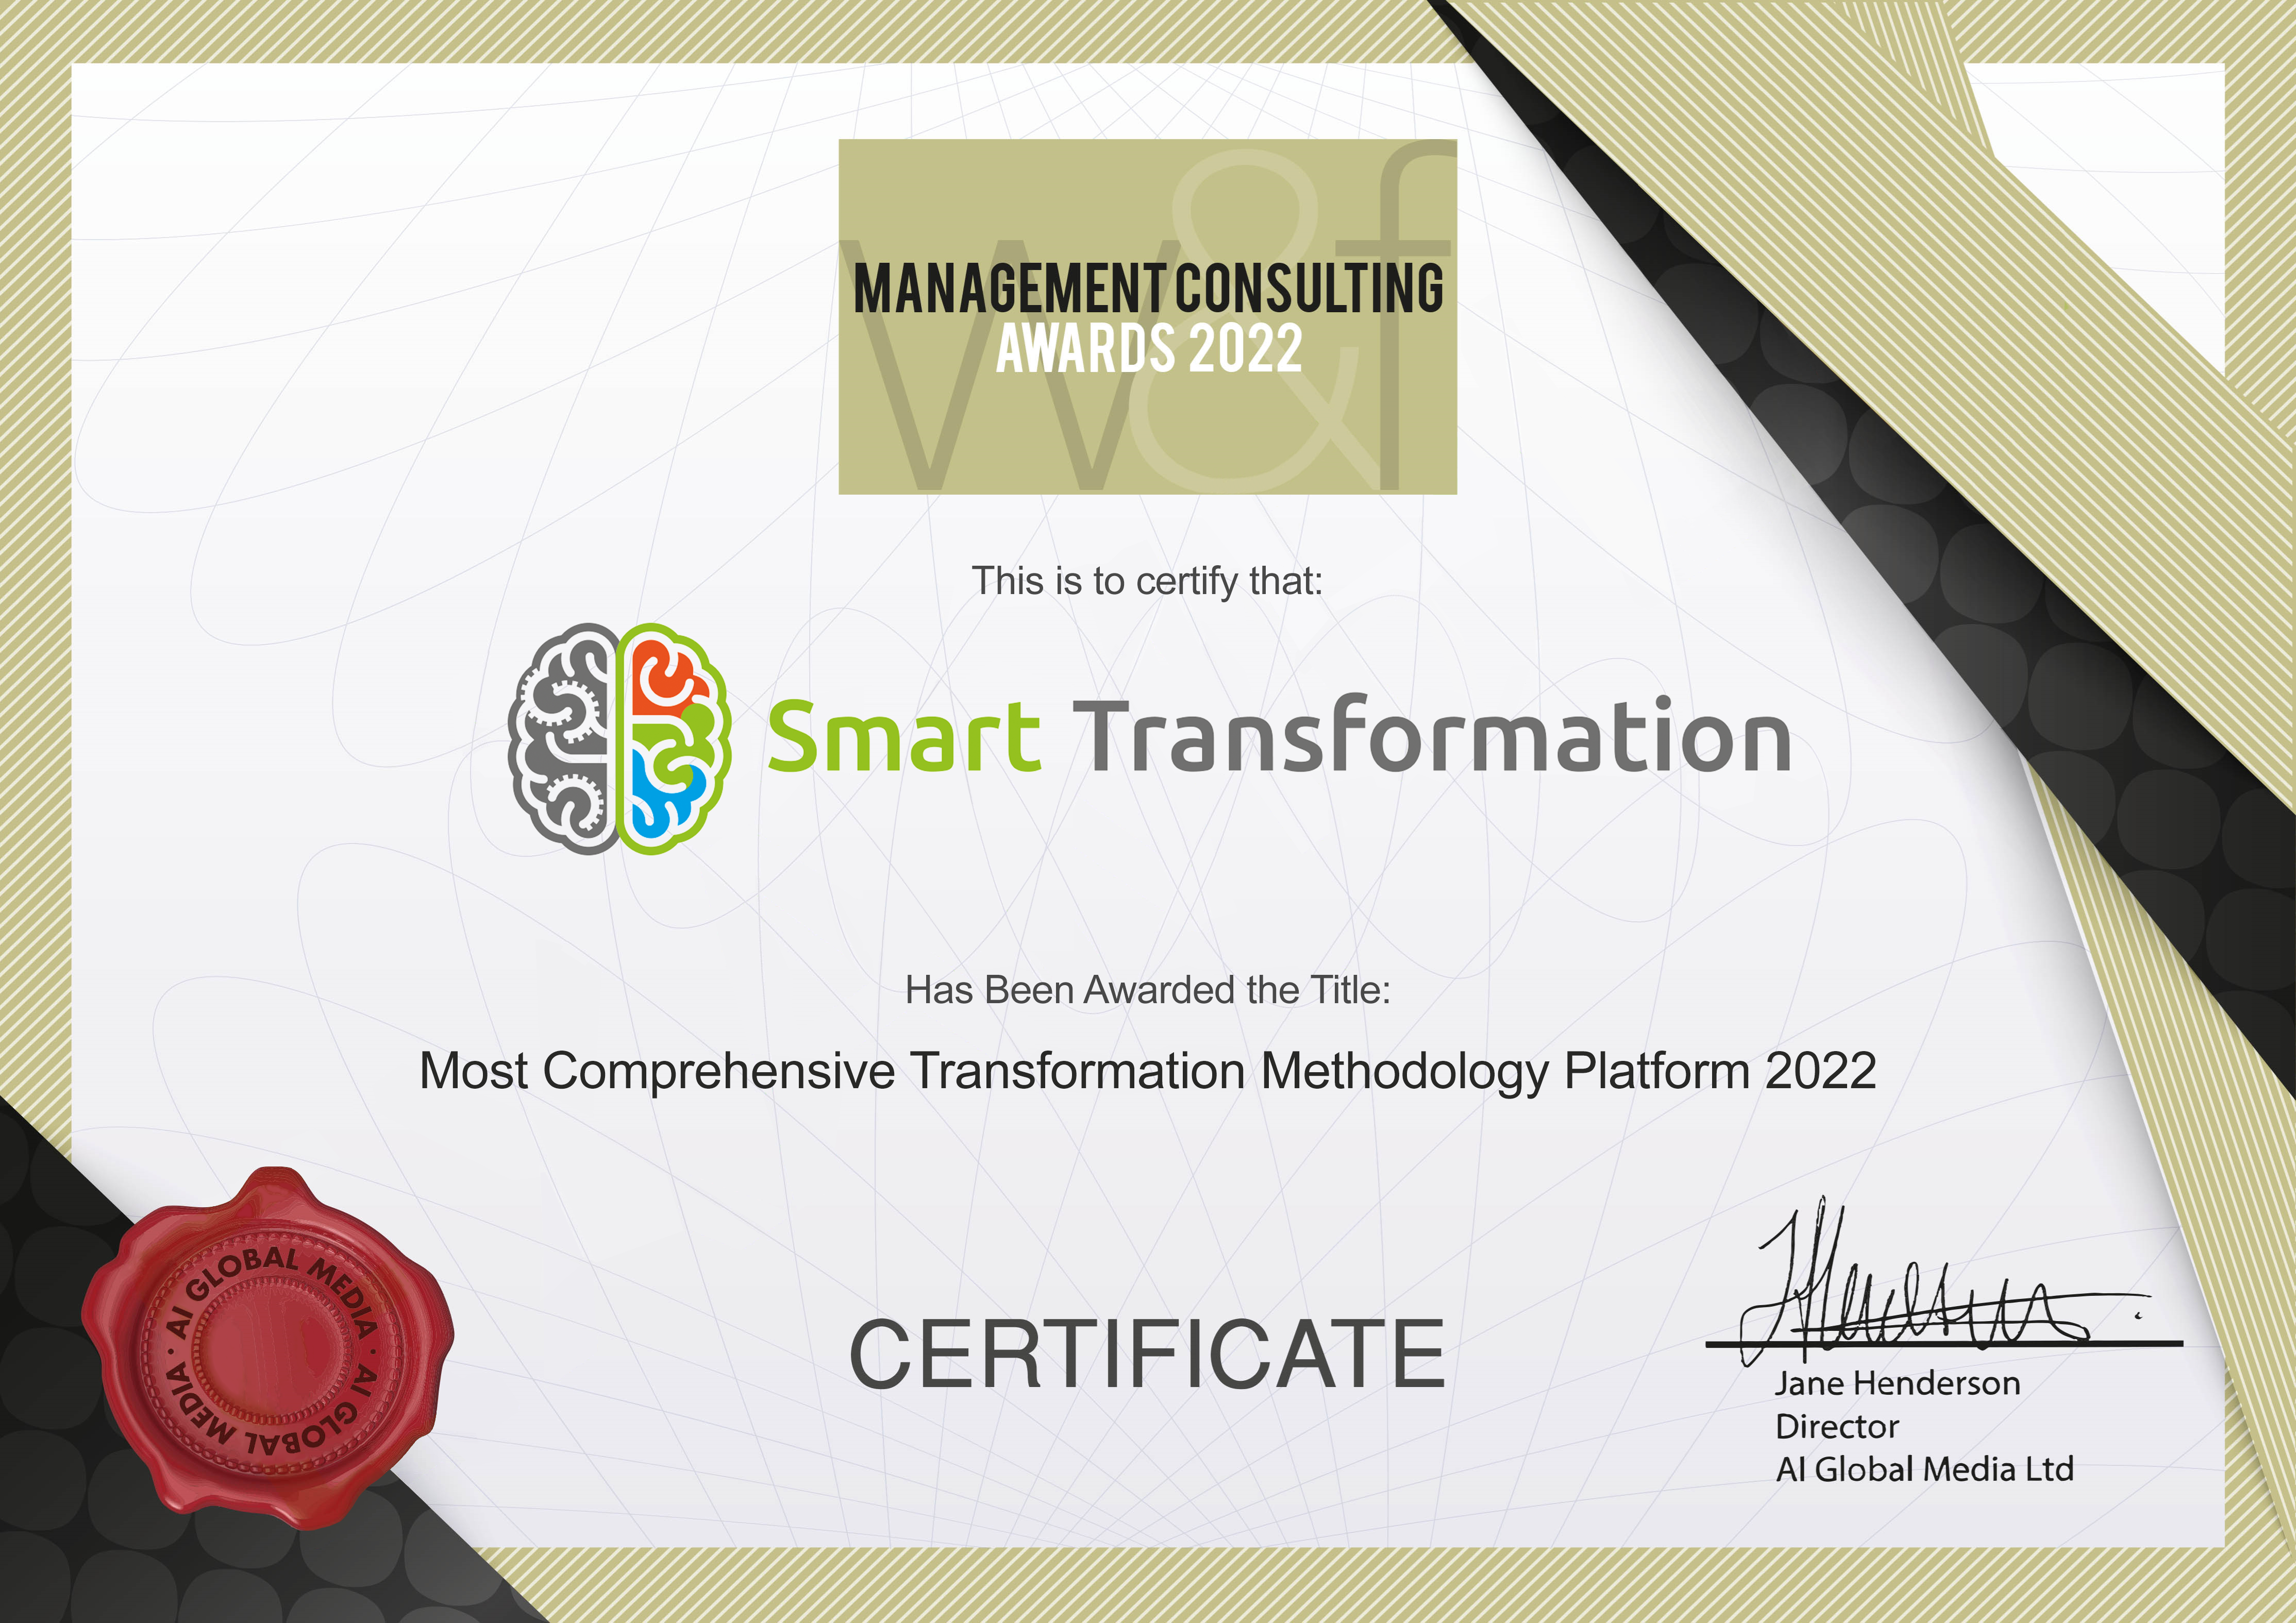 Certyfikat nagrody Management Consulting Awards 2022 dla Smart Transformation z nagrodą Most Comprehensive Transformation Methodology Platform 2022